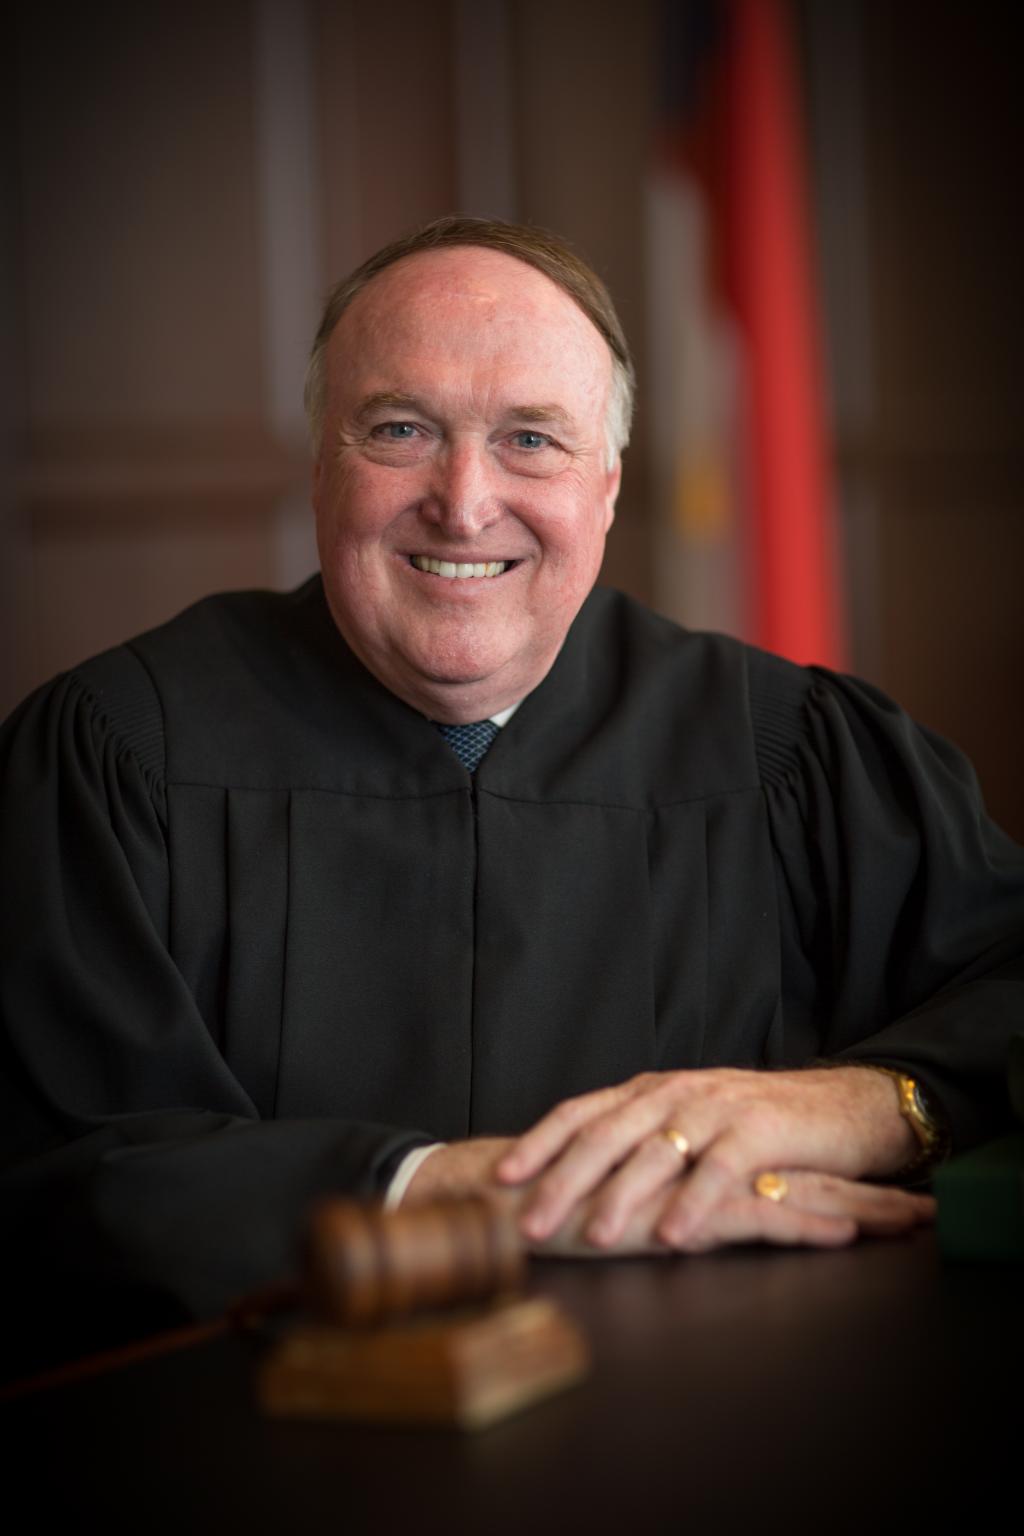 Judge John Tyson